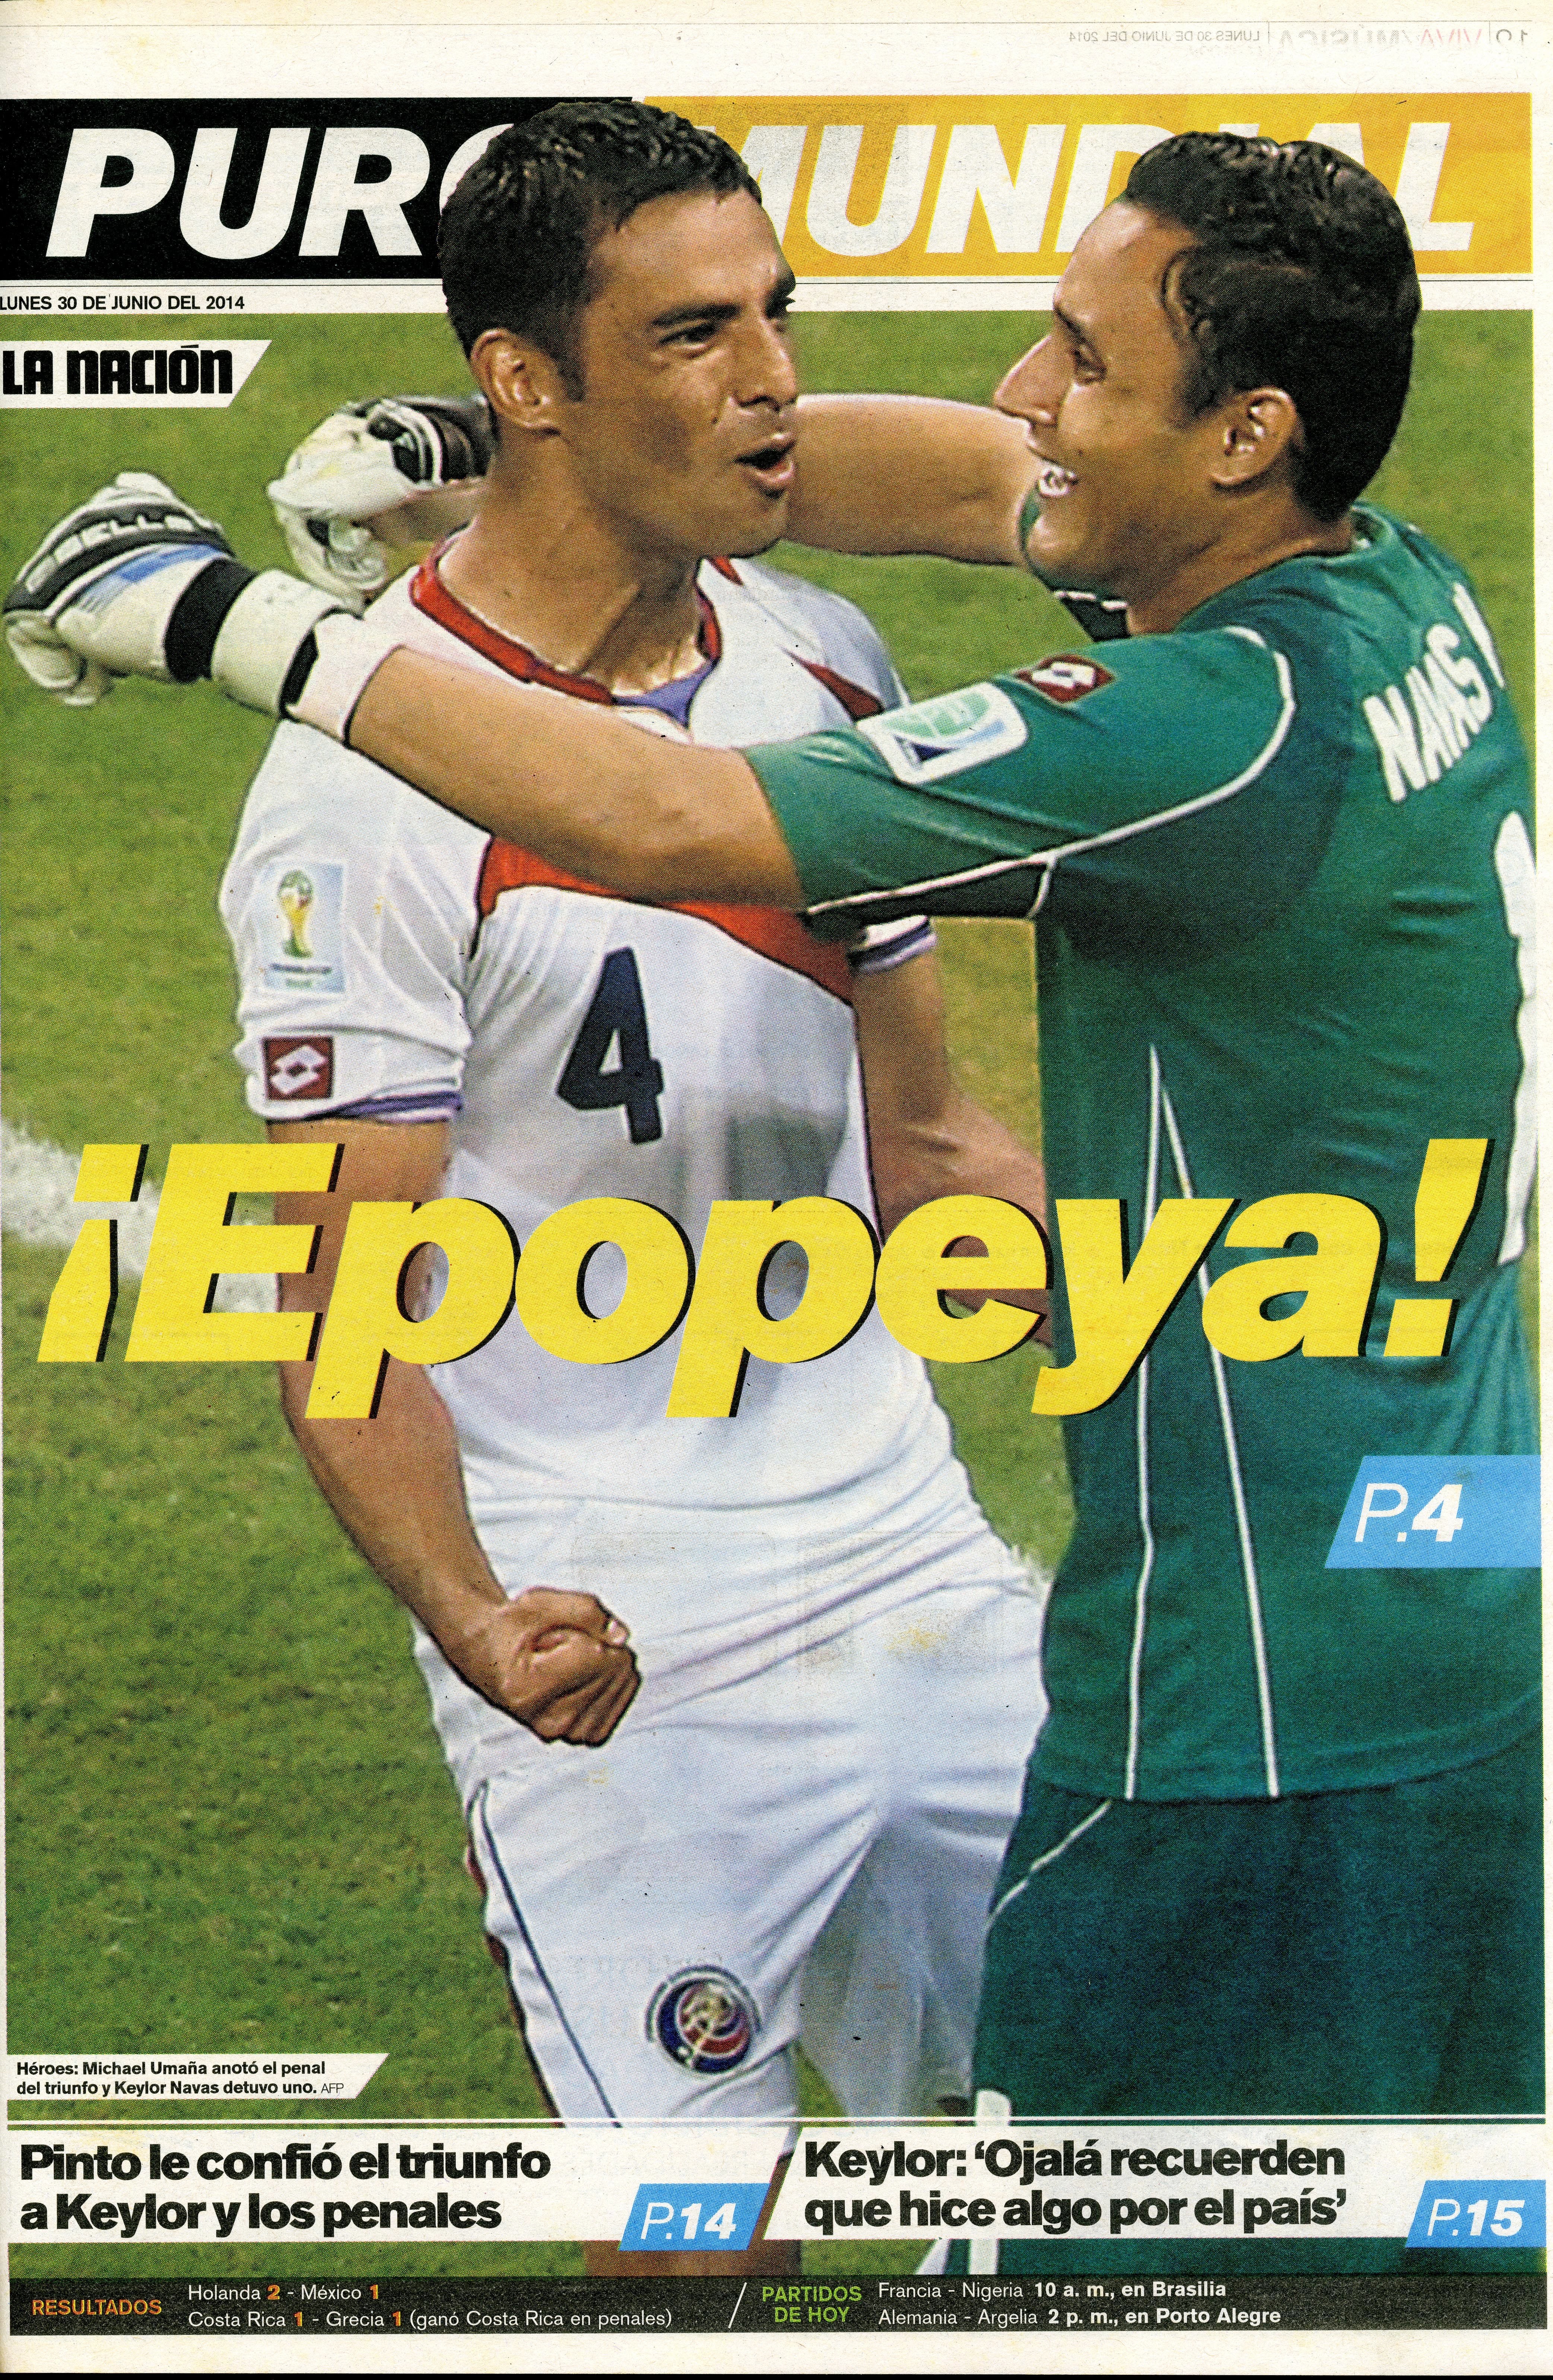 Michael Umaña y Keylor Navas se abrazan, simbolizando cómo se encontraba toda Costa Rica ante lo hecho por estos héroes en el Mundial de Brasil 2014.